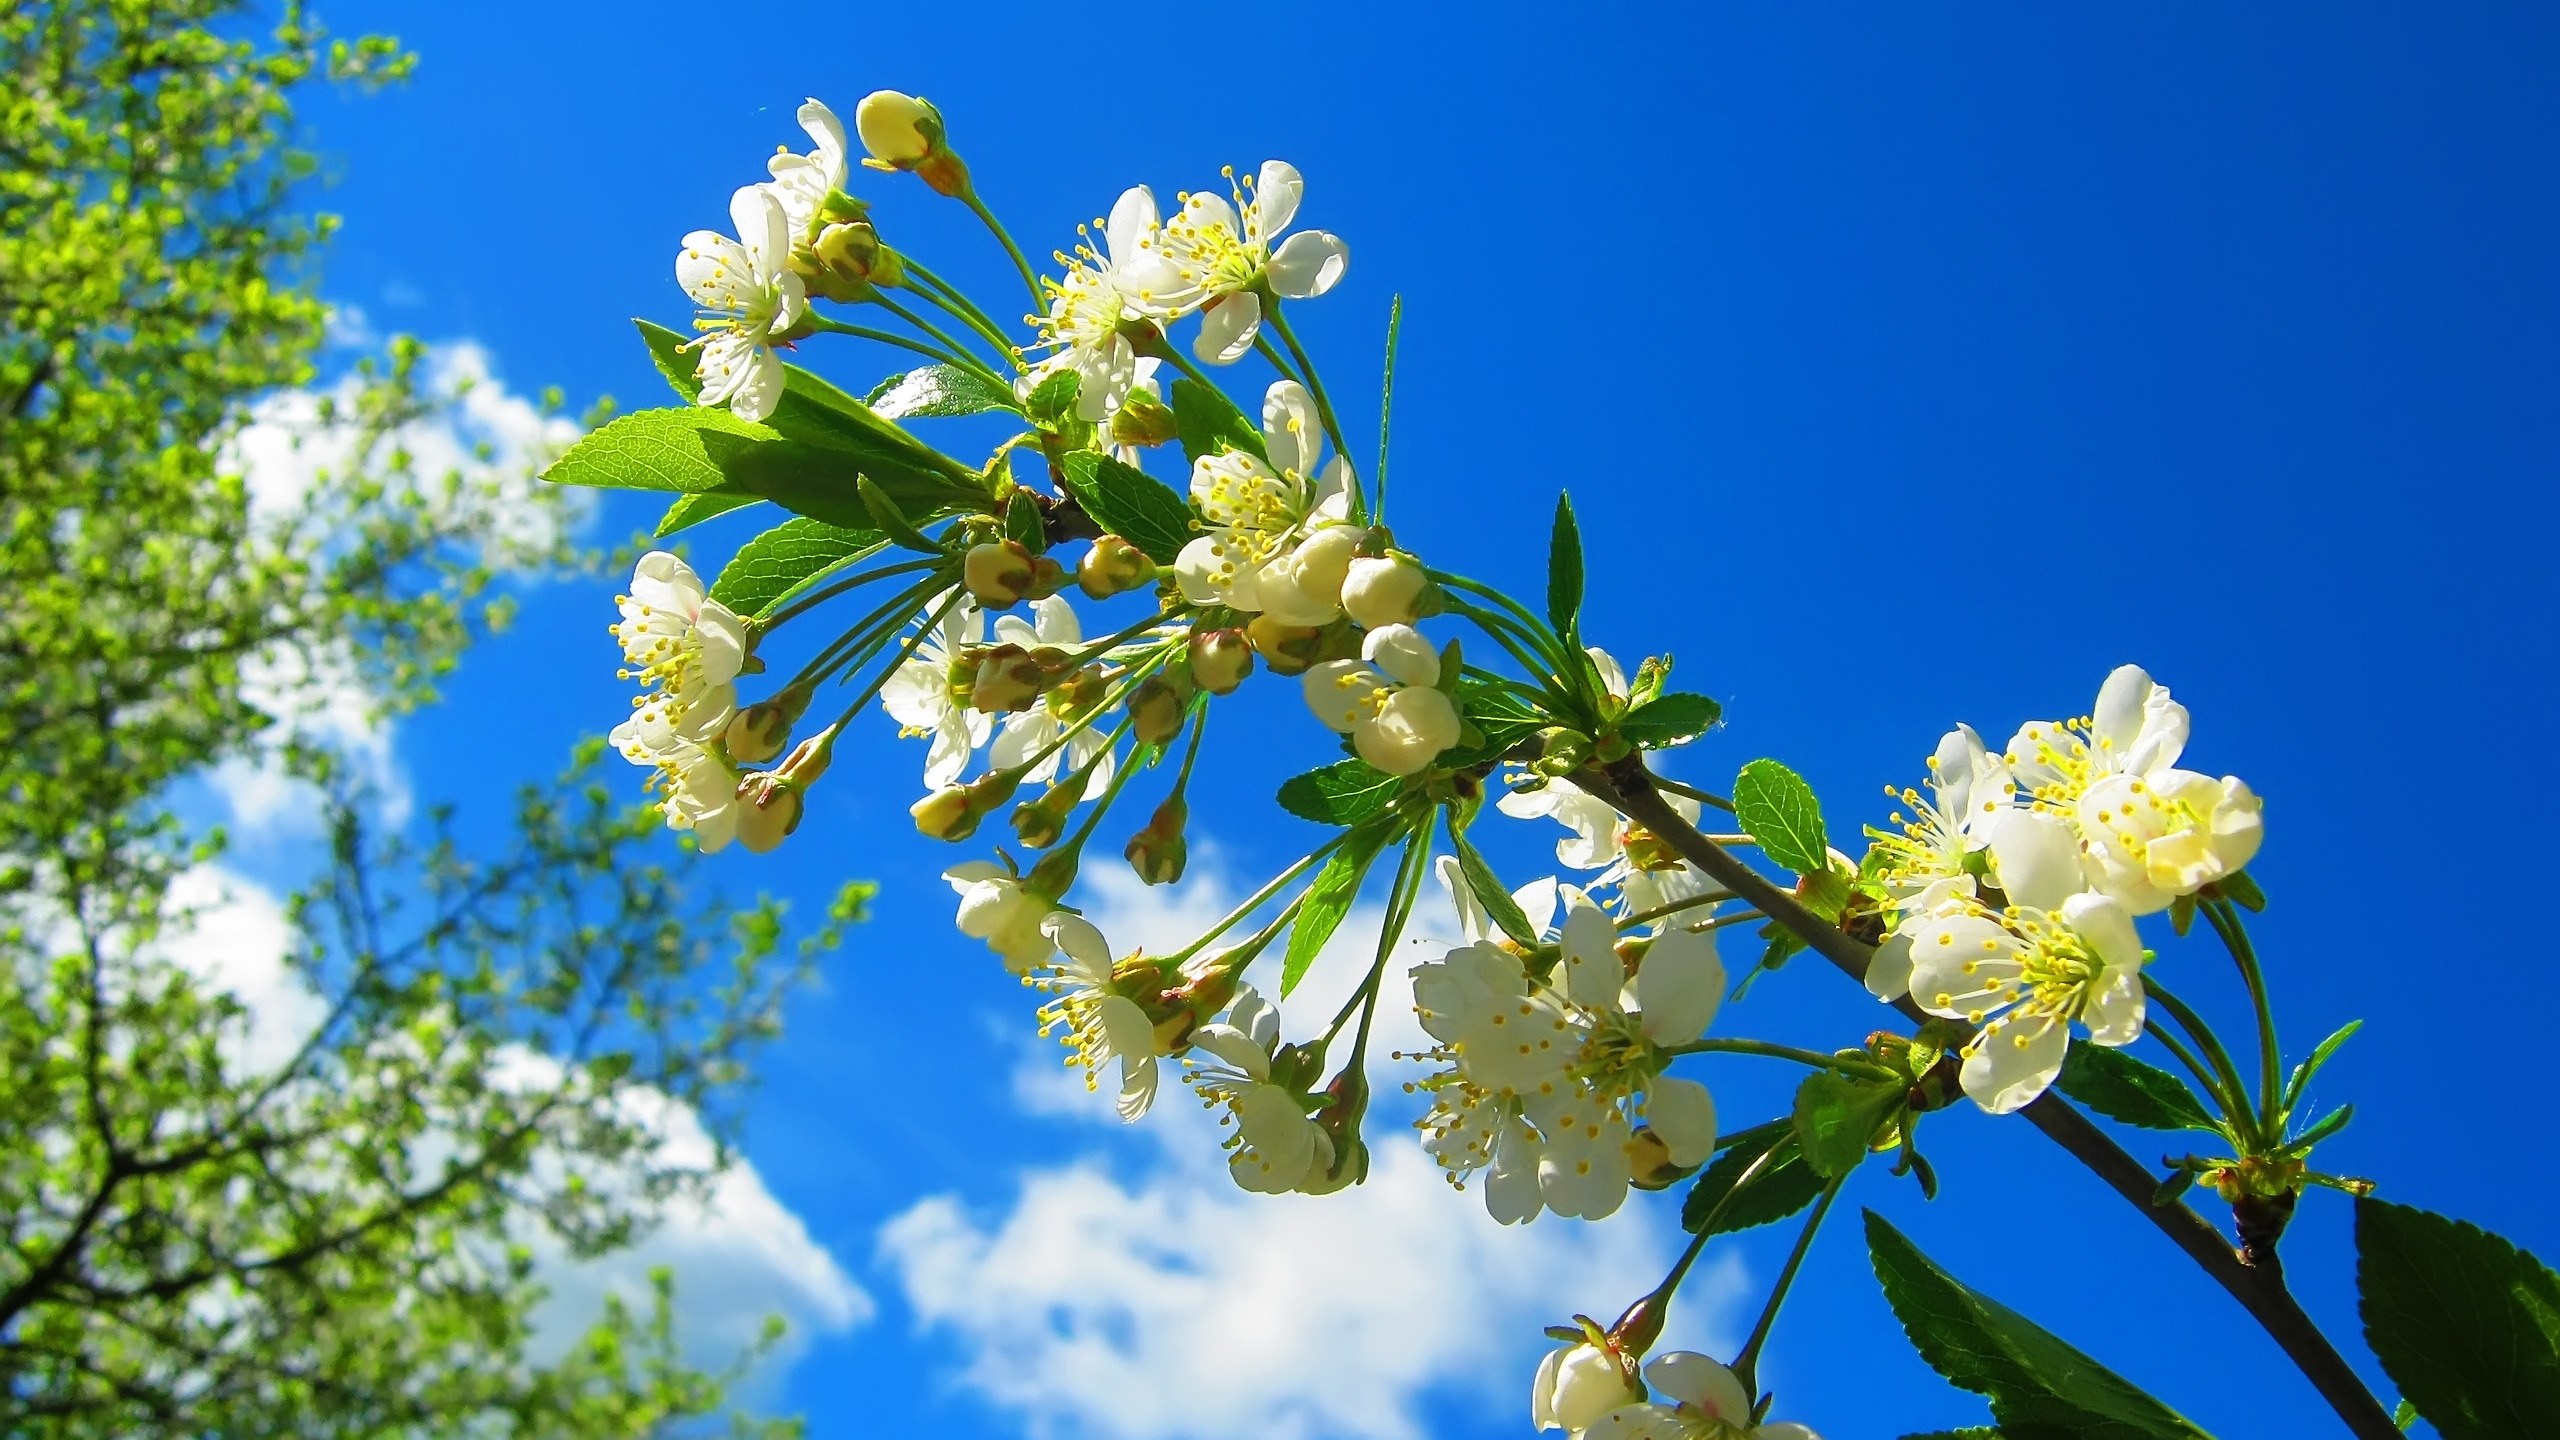 Spring Flower Tree for 2560x1440 HDTV resolution